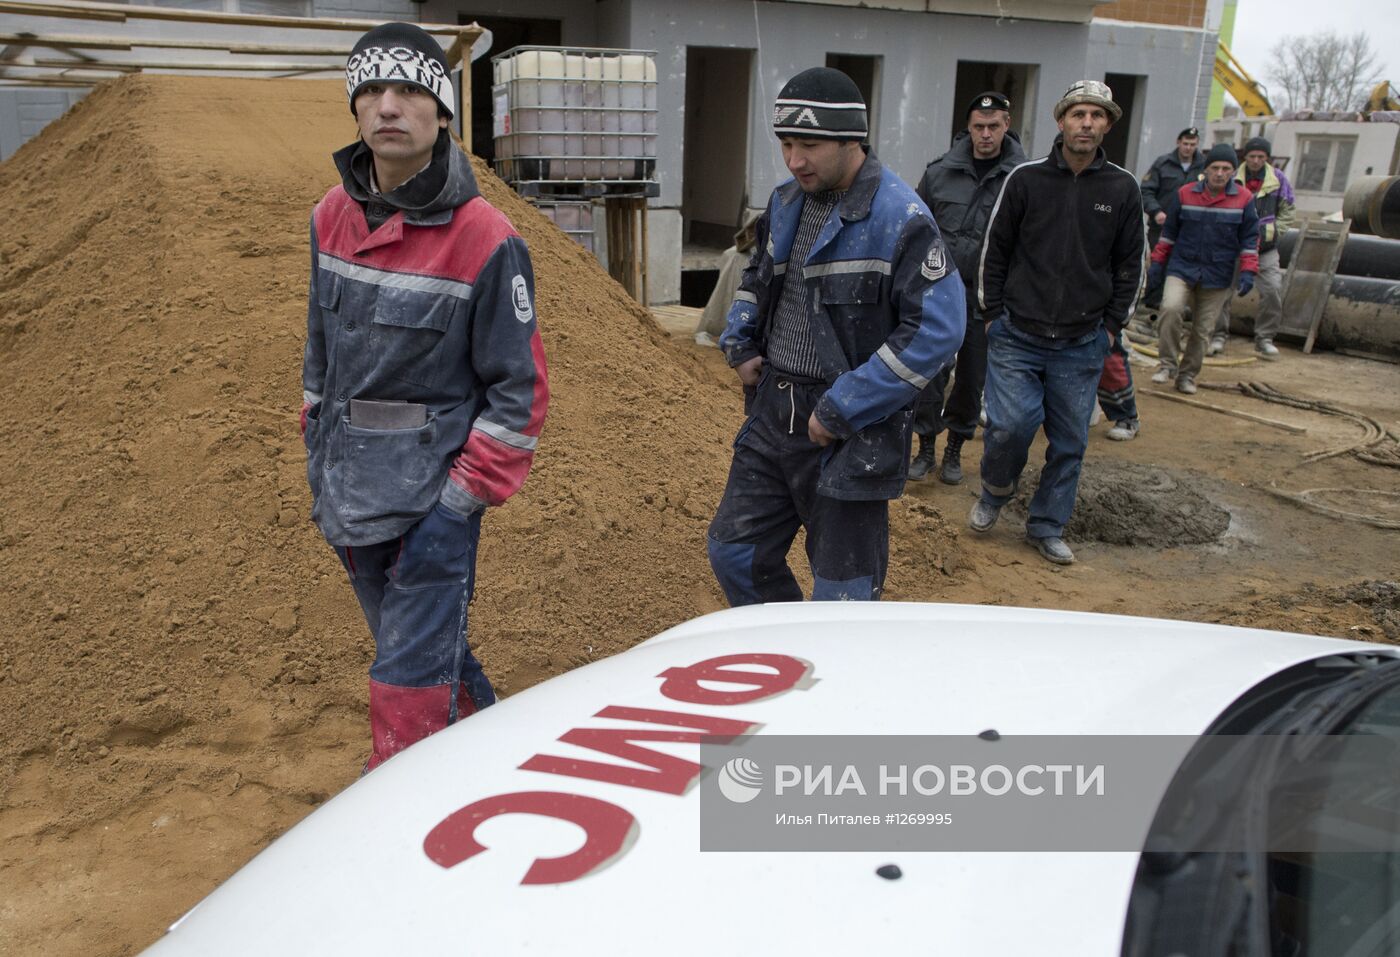 Рейд сотрудников ФМС по выявлению нелегальных мигрантов в Москве